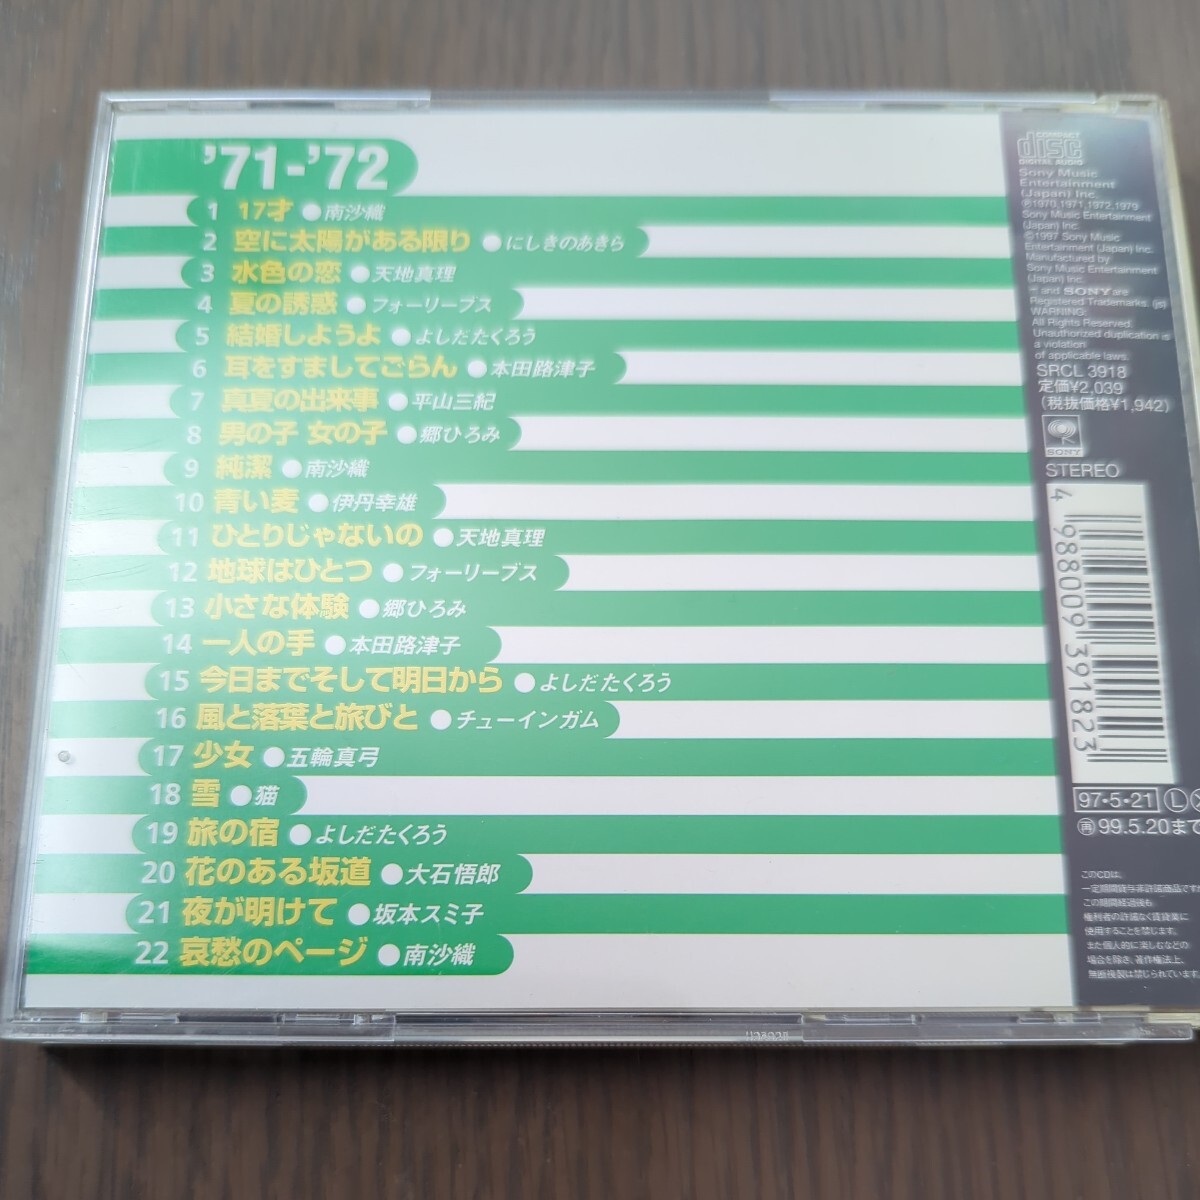 【送料込み】GOLDEN J-POP '71-'72 ベスト・ヒット集